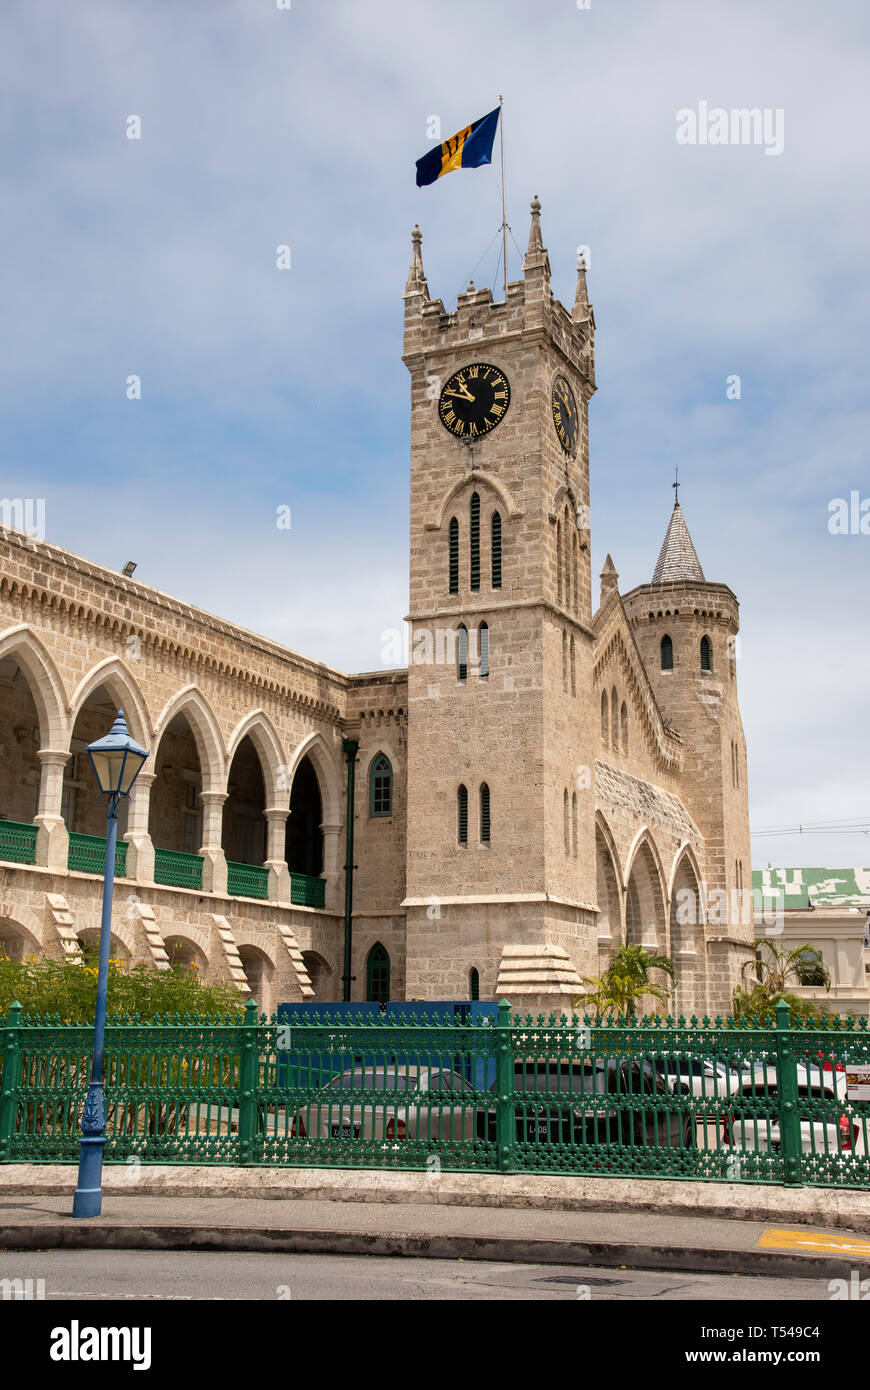 La tour de l'horloge du Parlement à Bridgetown, Barbade Banque D'Images